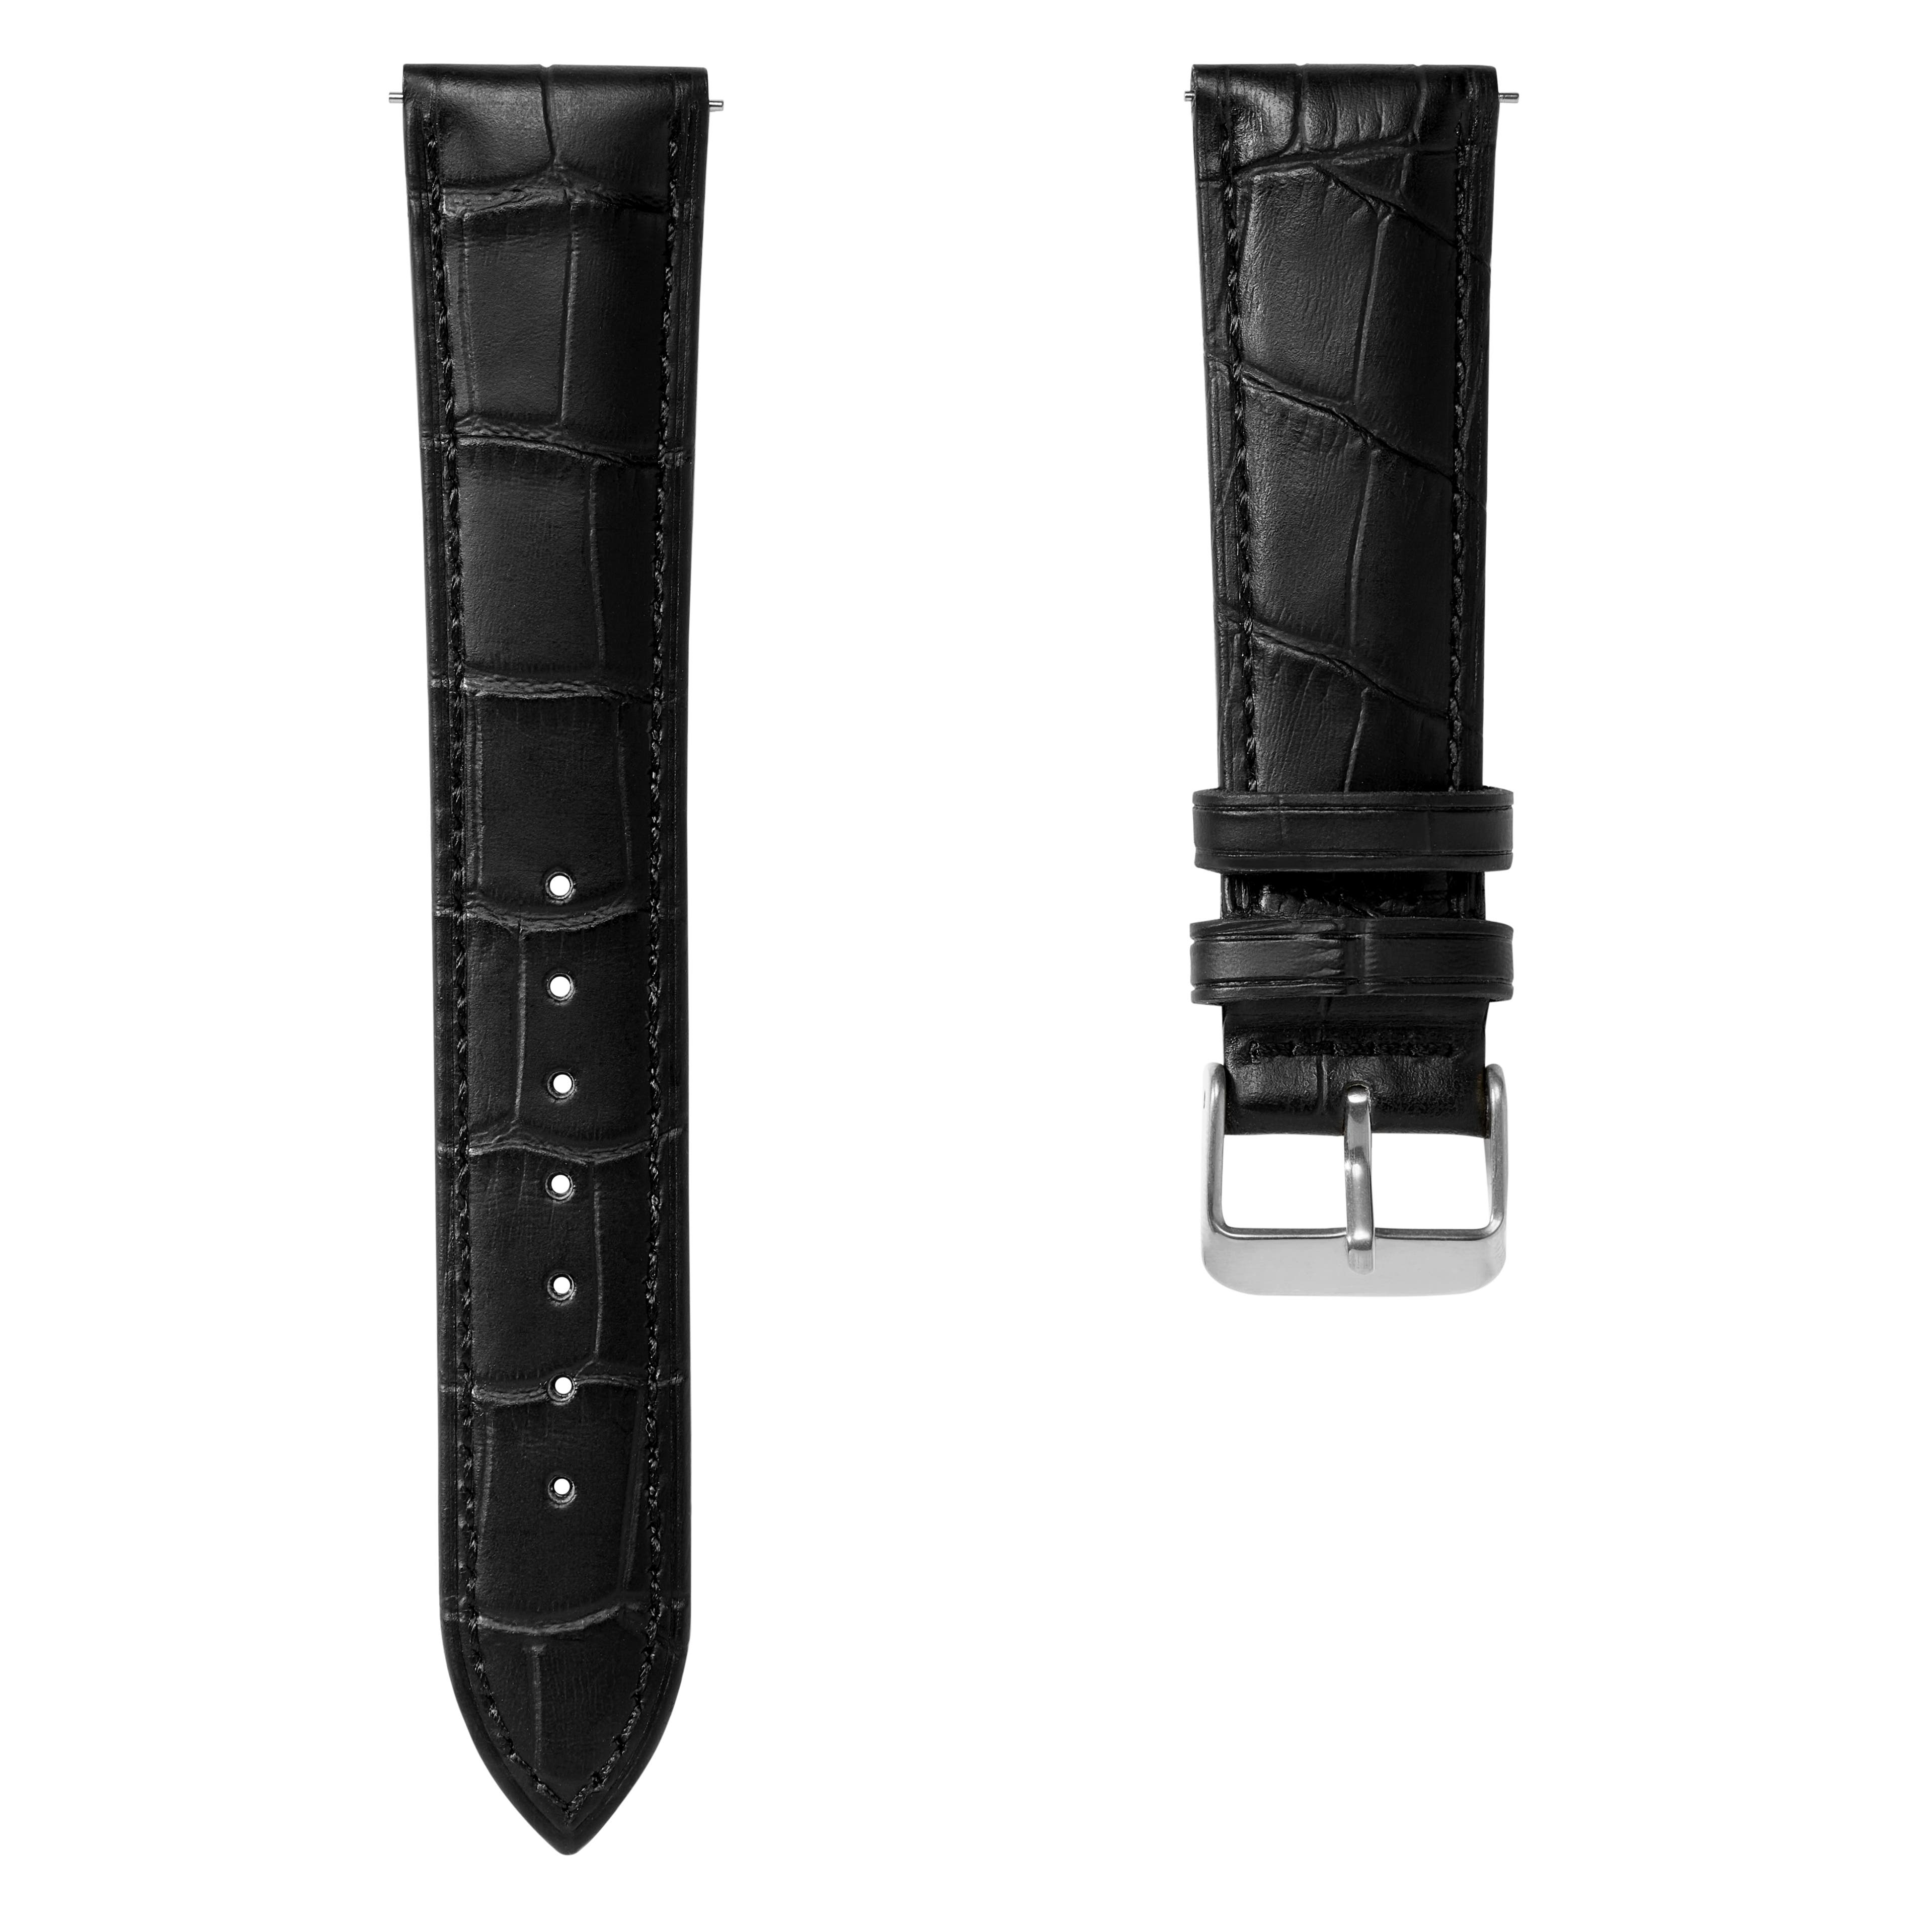 Correa de reloj de cuero negro con relieve de cocodrilo y hebilla plateada de 20 mm - Liberación rápida